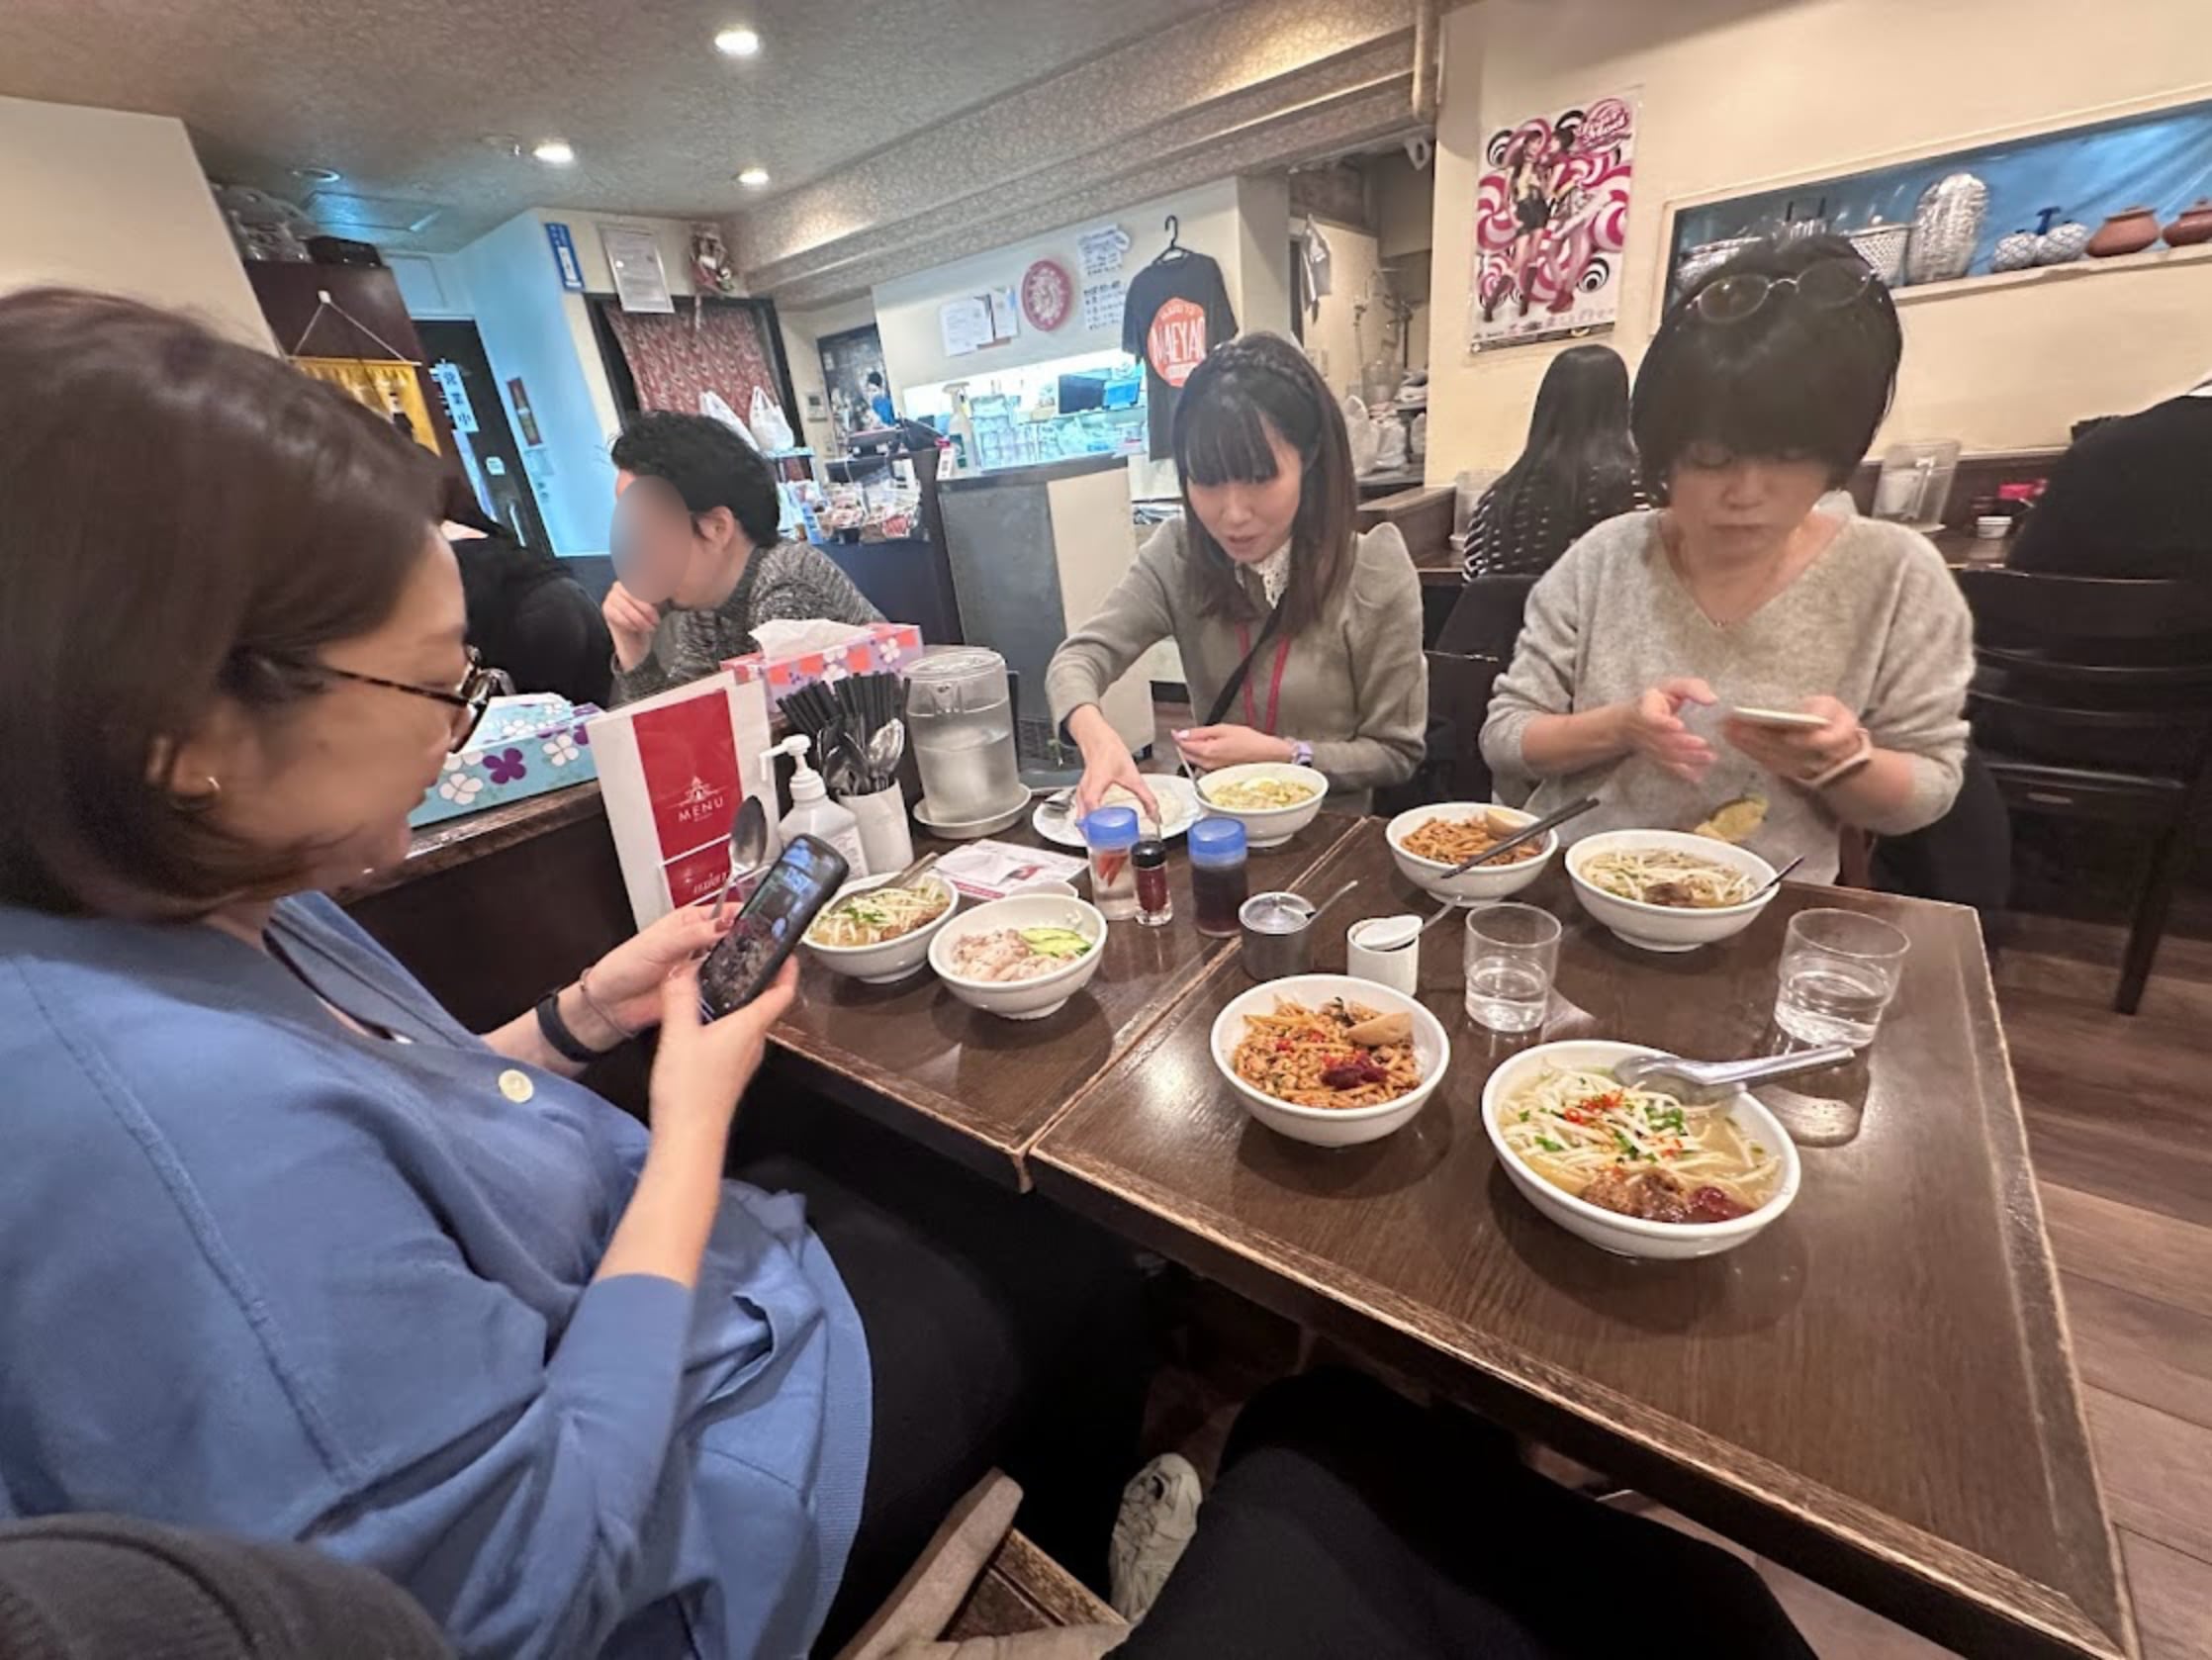 タイ料理屋で出てきた食事を3人がスマホカメラで撮影している写真